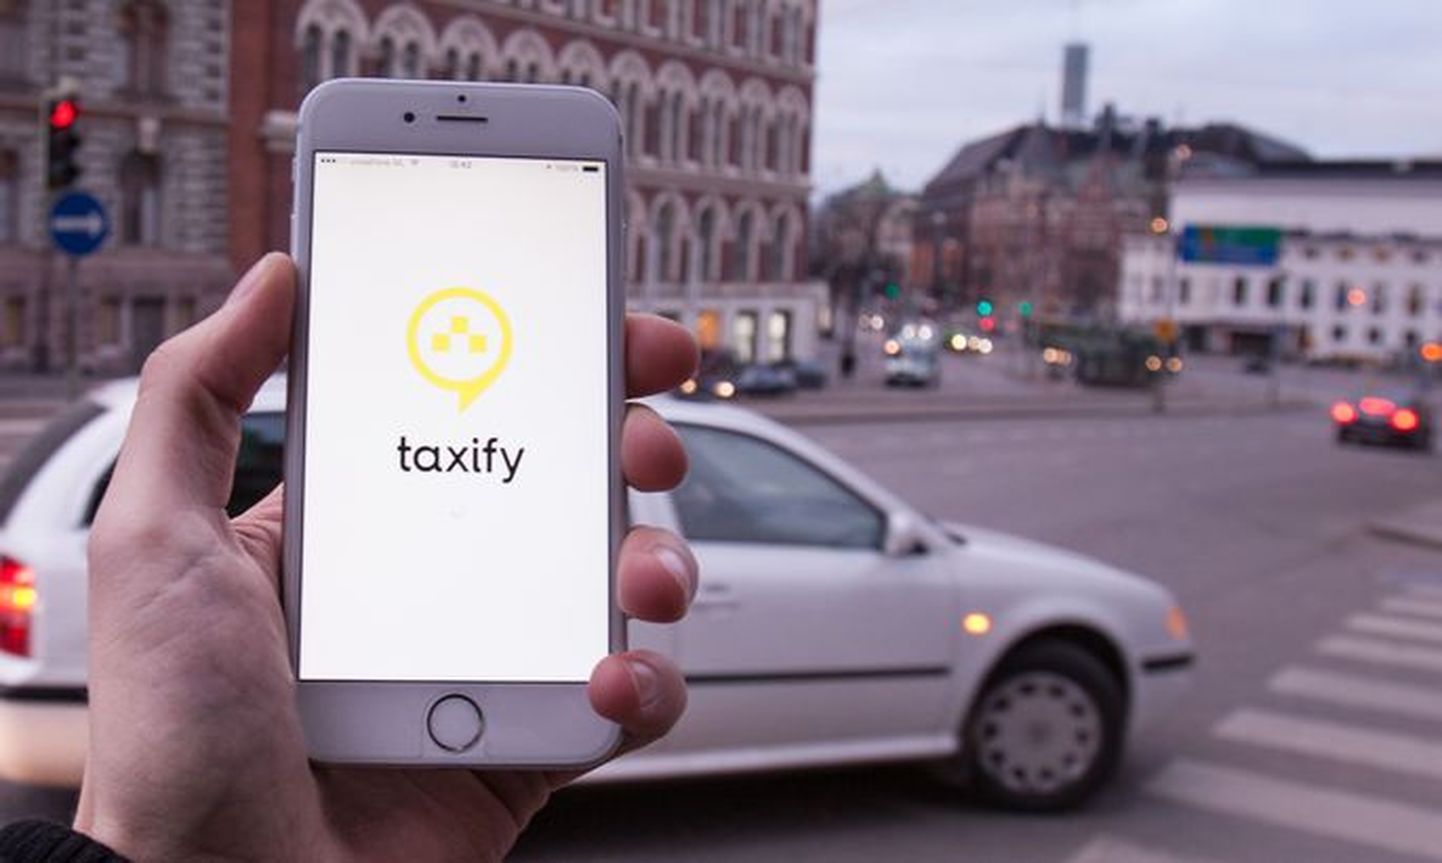 В январе в Кохтла-Ярве и Йыхви для водителей "Taxify" введена минимальная гарантированная плата - минимум 5 евро за каждый вызов.